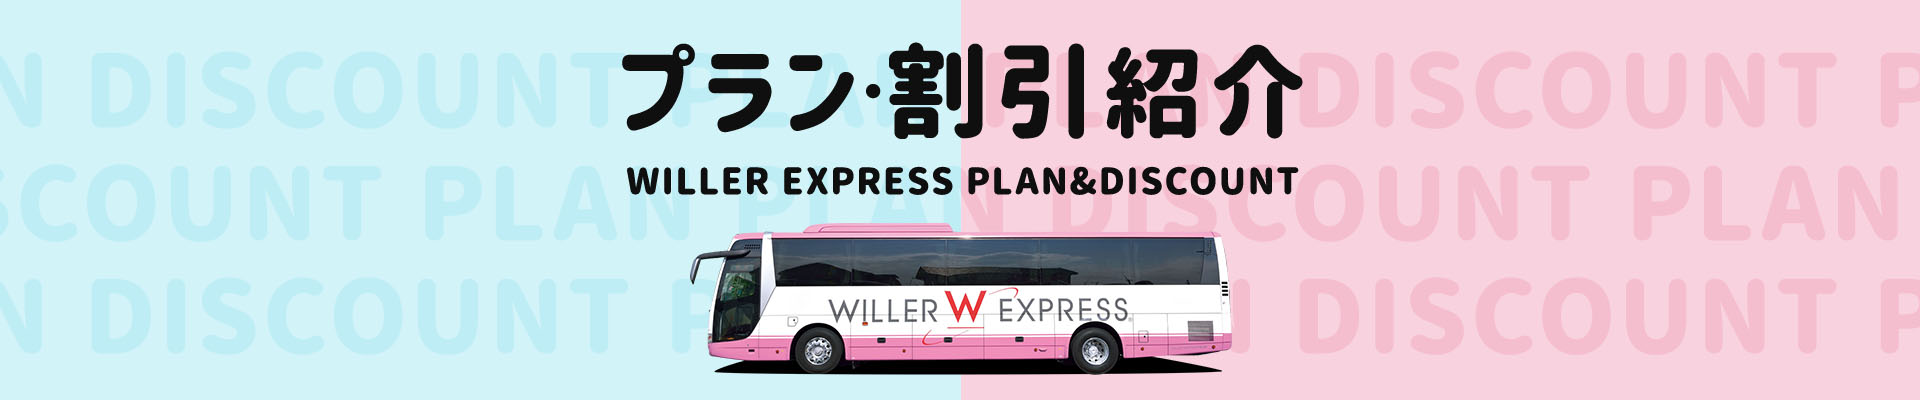 プラン・割引紹介 WILLER EXPRESS BUS PLAN & DISCOUNT